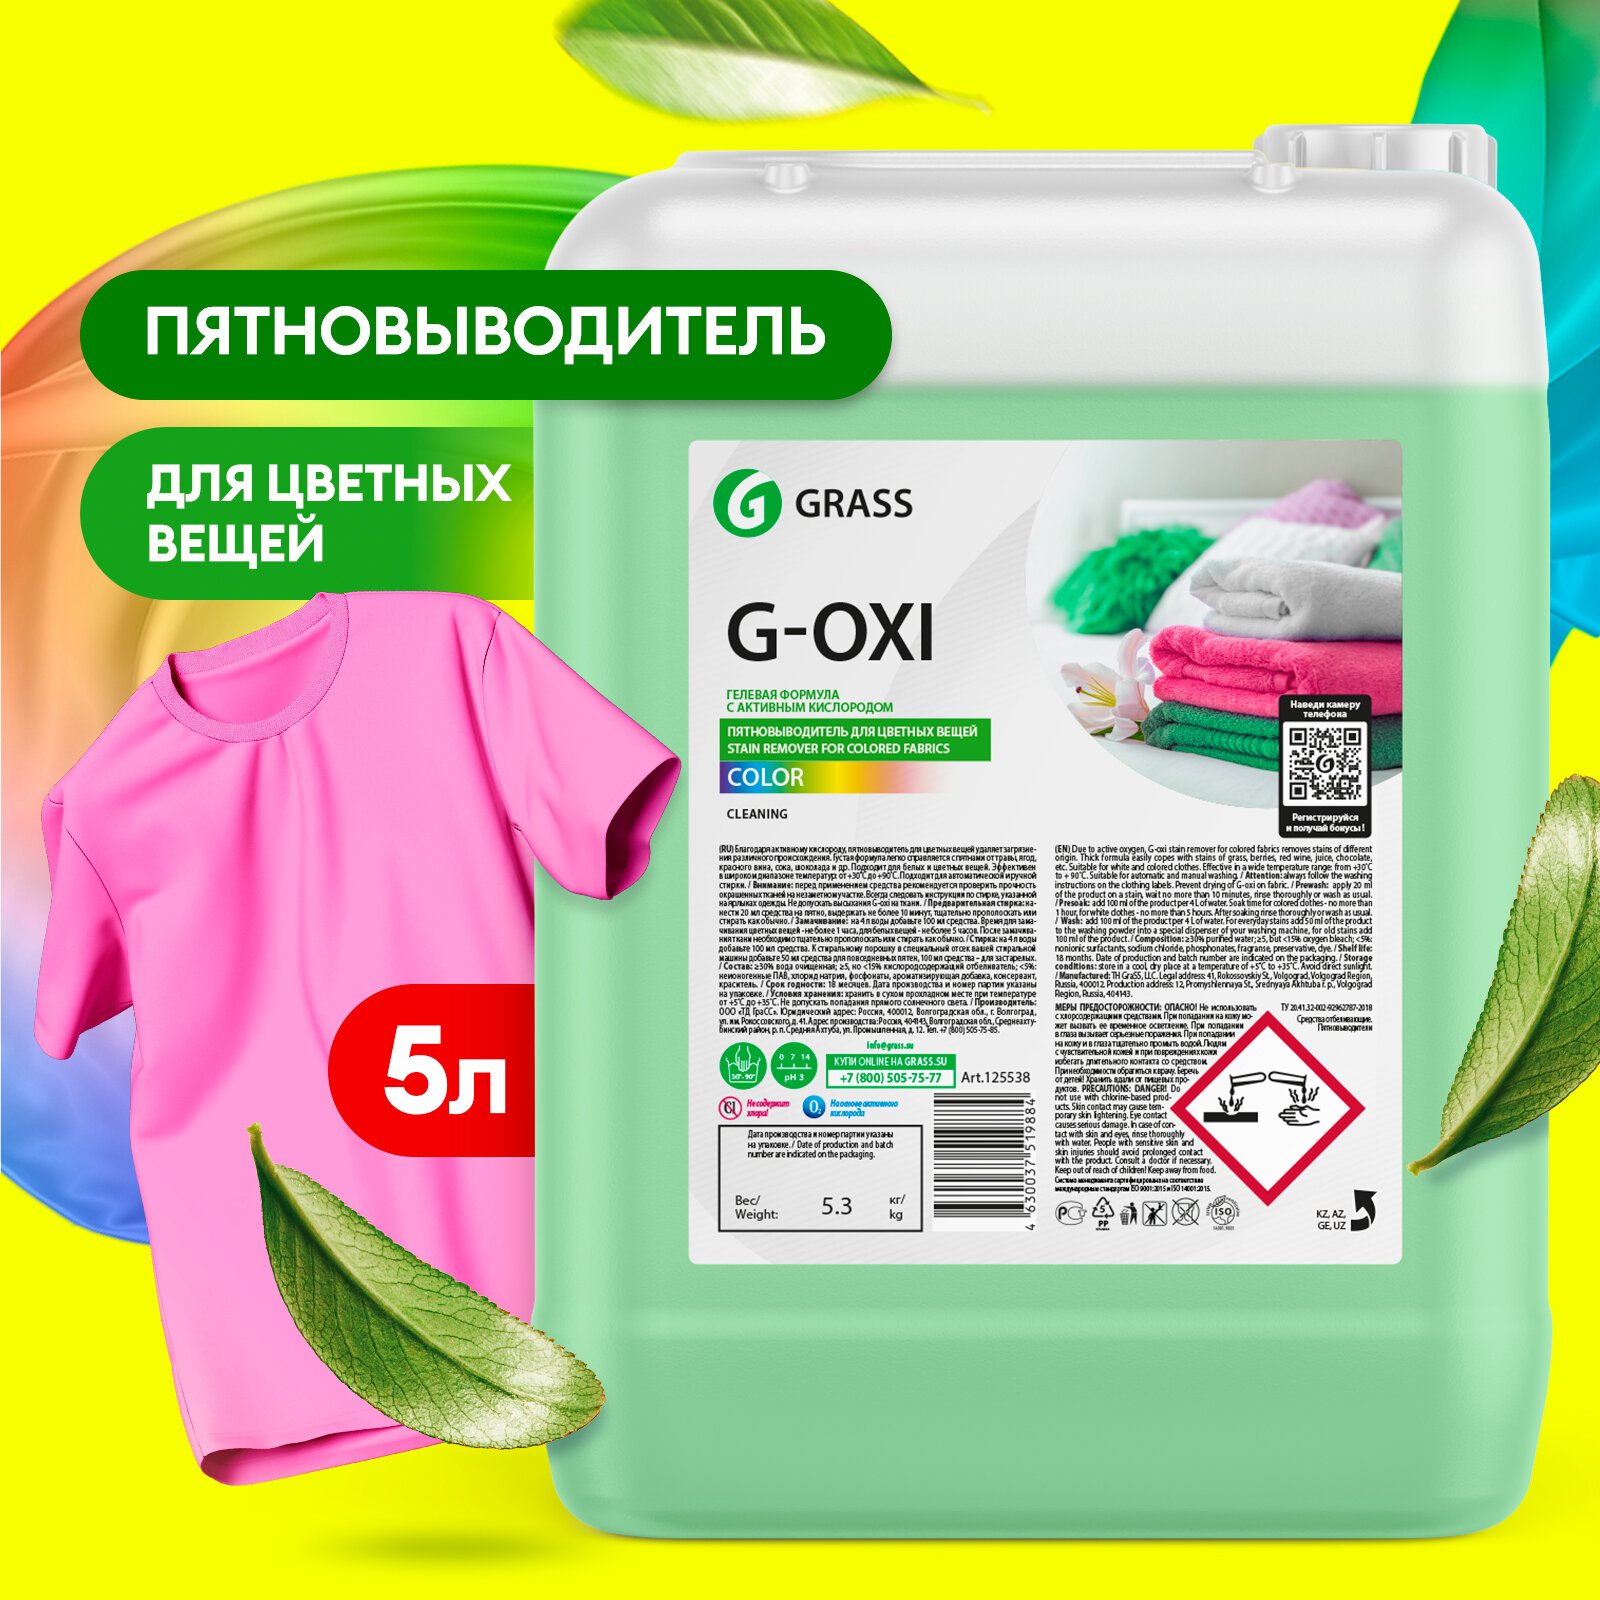 Пятновыводитель Grass G-OXI gel color, 500 мл